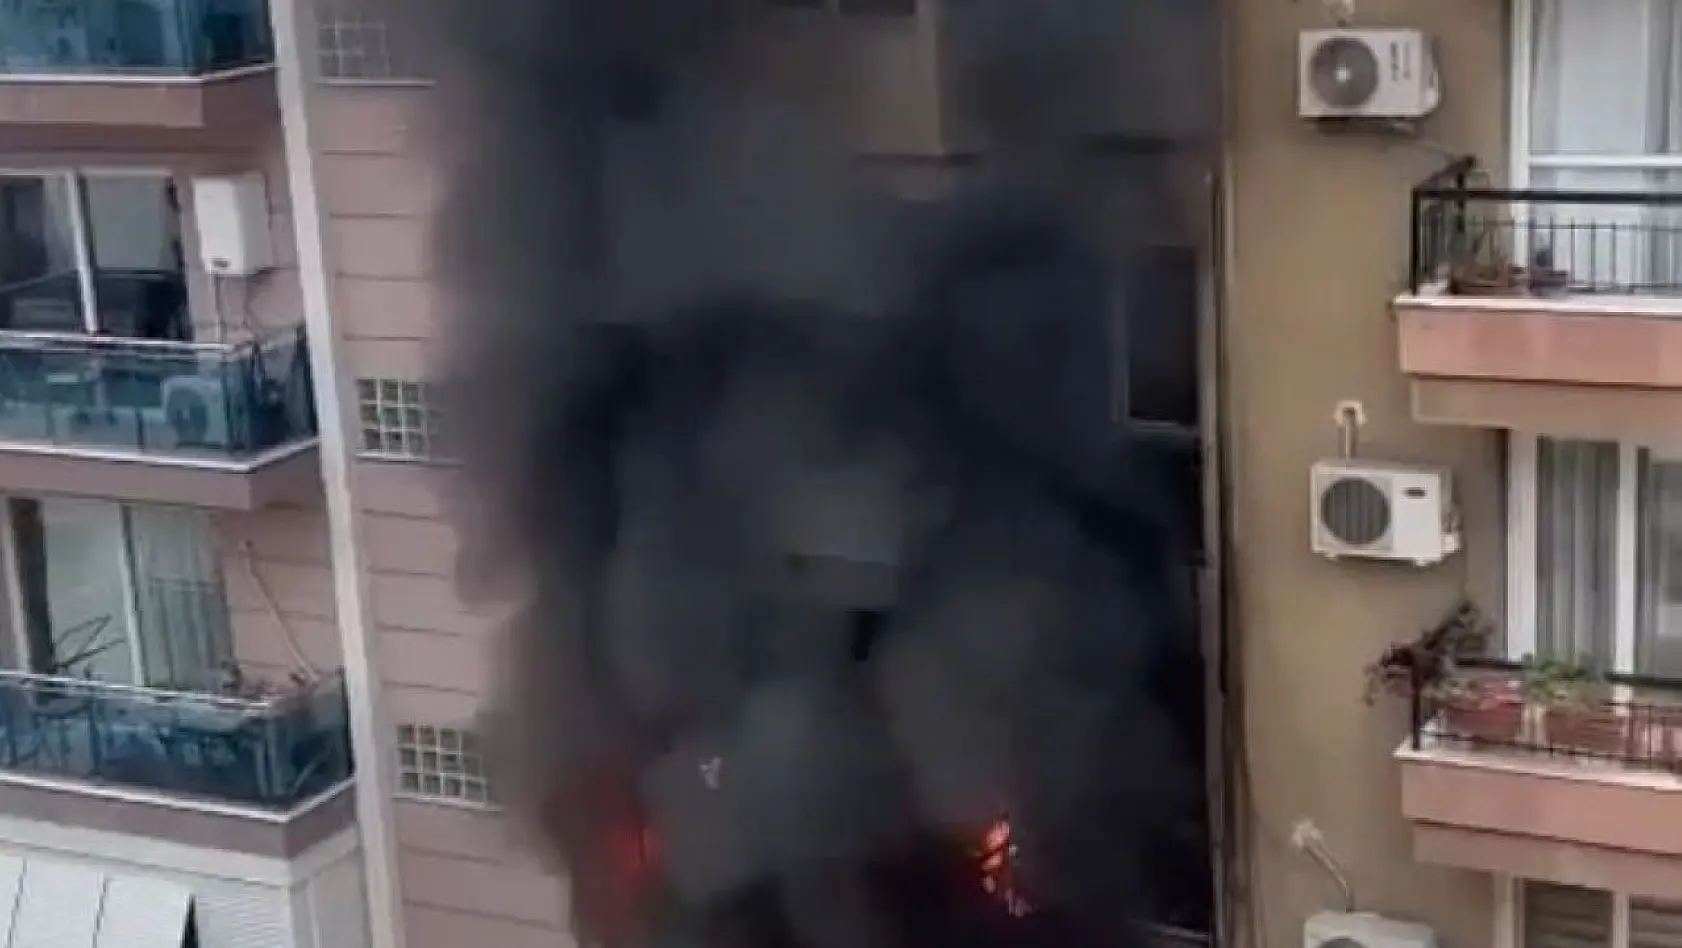 İzmir'de çıkan yangında 3 kişi dumandan etkilendi